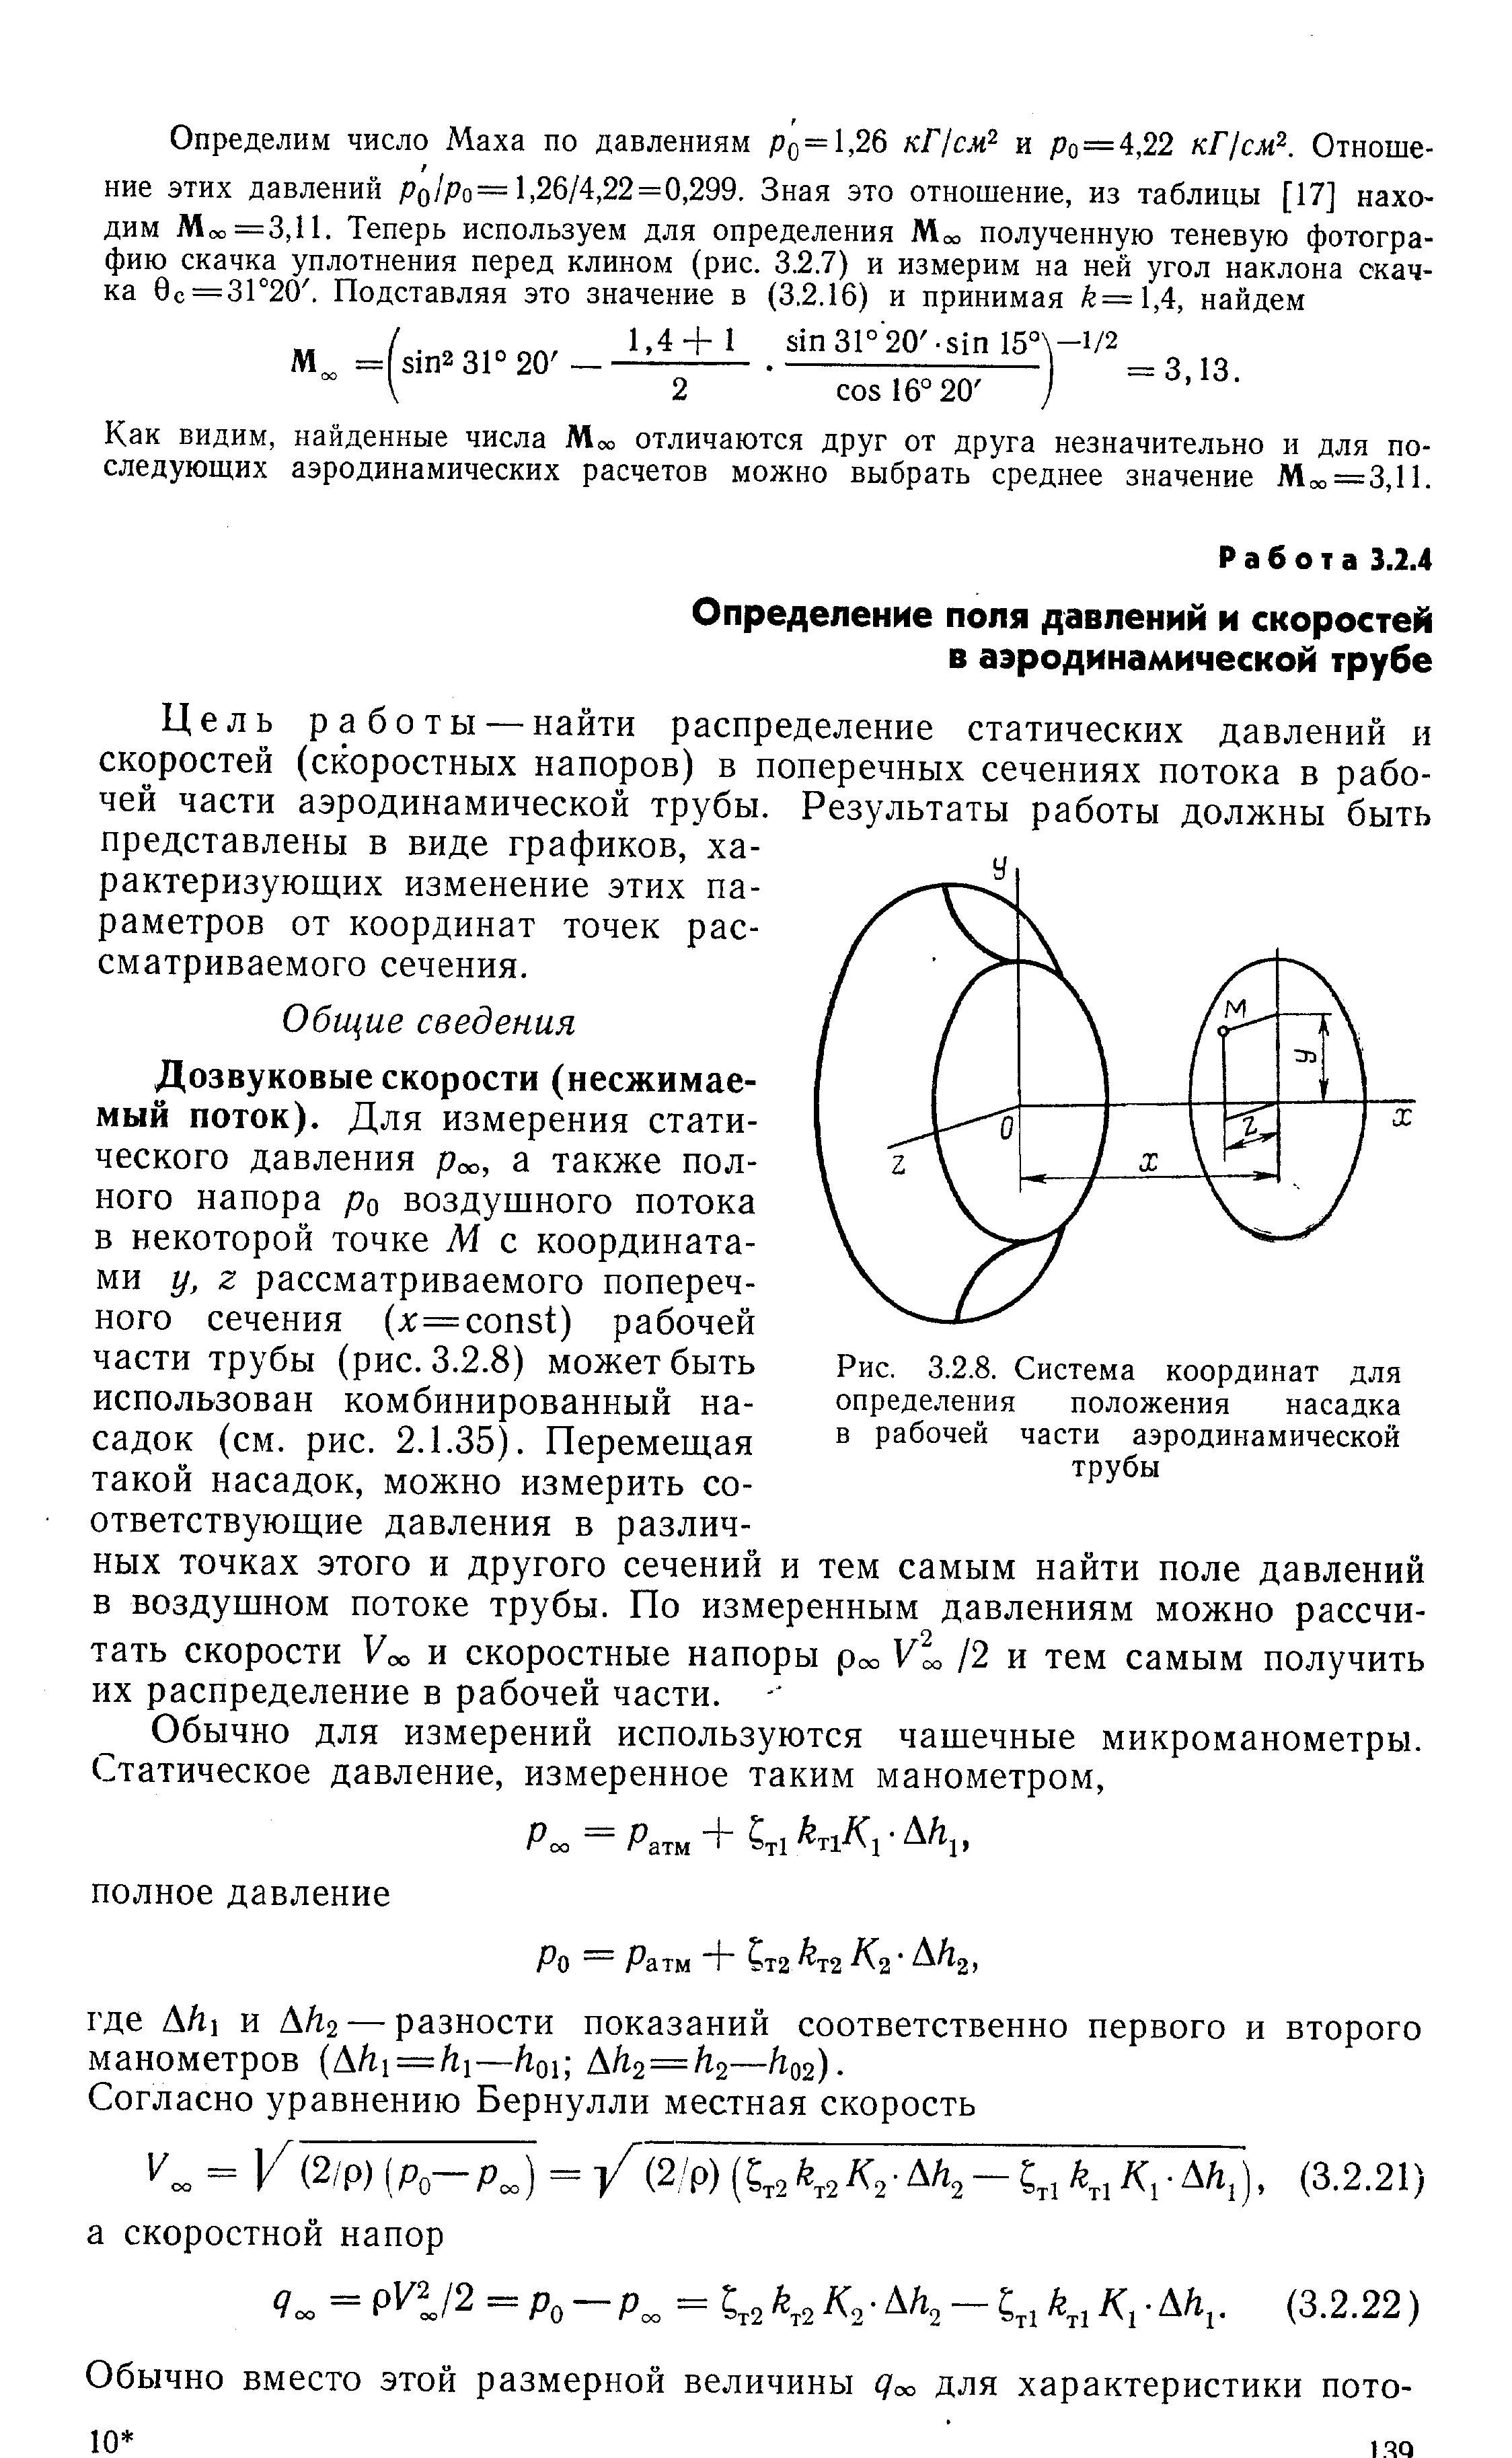 Рис. 3.2.8. Система координат для определения положения насадка в рабочей части аэродинамической трубы
